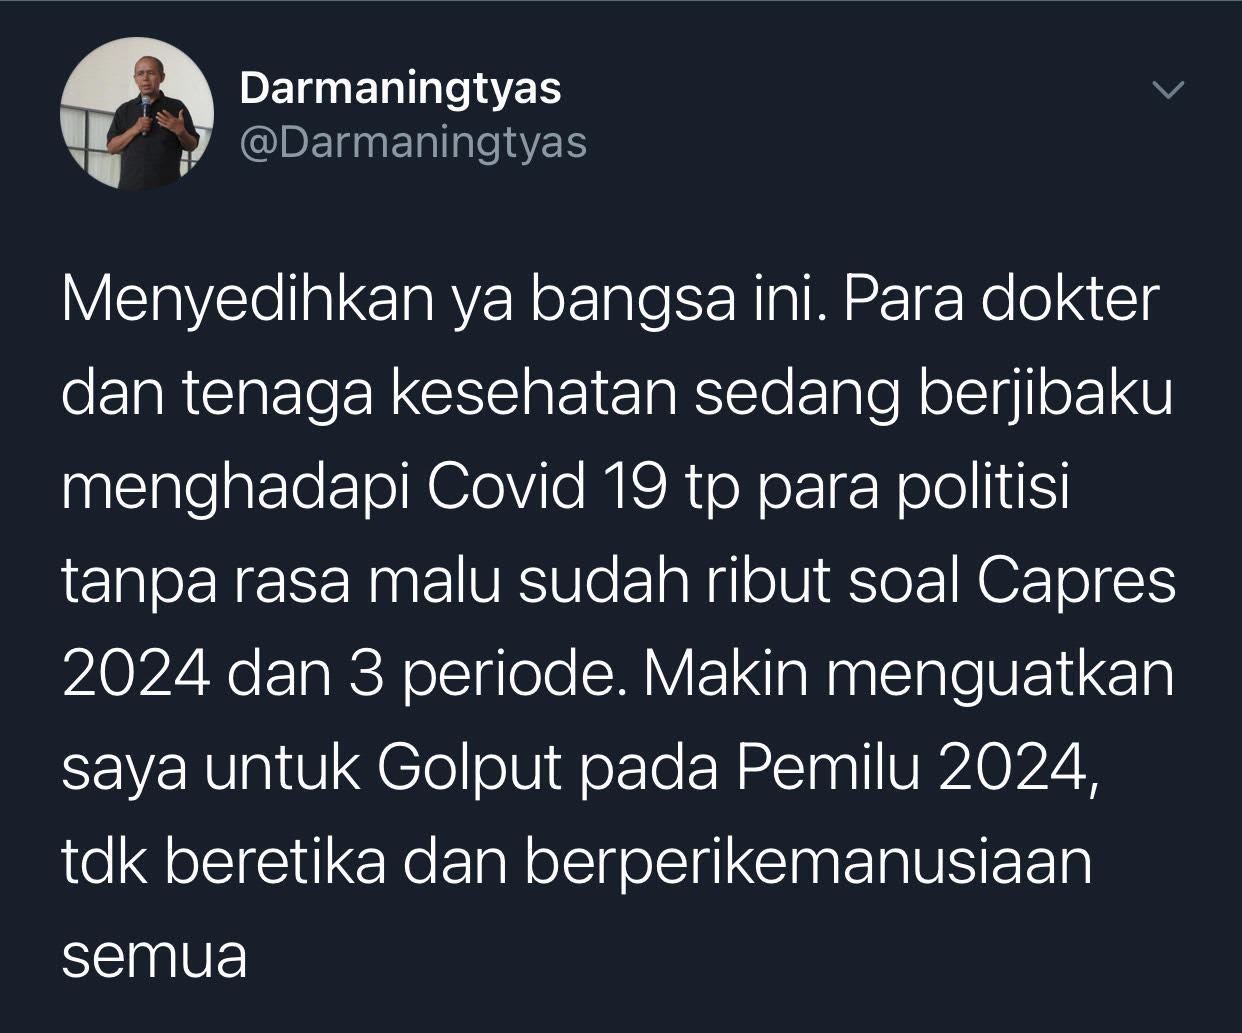 Darmaningtyas sebut bangsa Indonesia begitu menyedihkan karena di tengah dokter dan nakes berjibaku hadapi Covid-19 para politisi tanpa rasa malu sudah ribut soal Capres 2024 dan 3 periode.